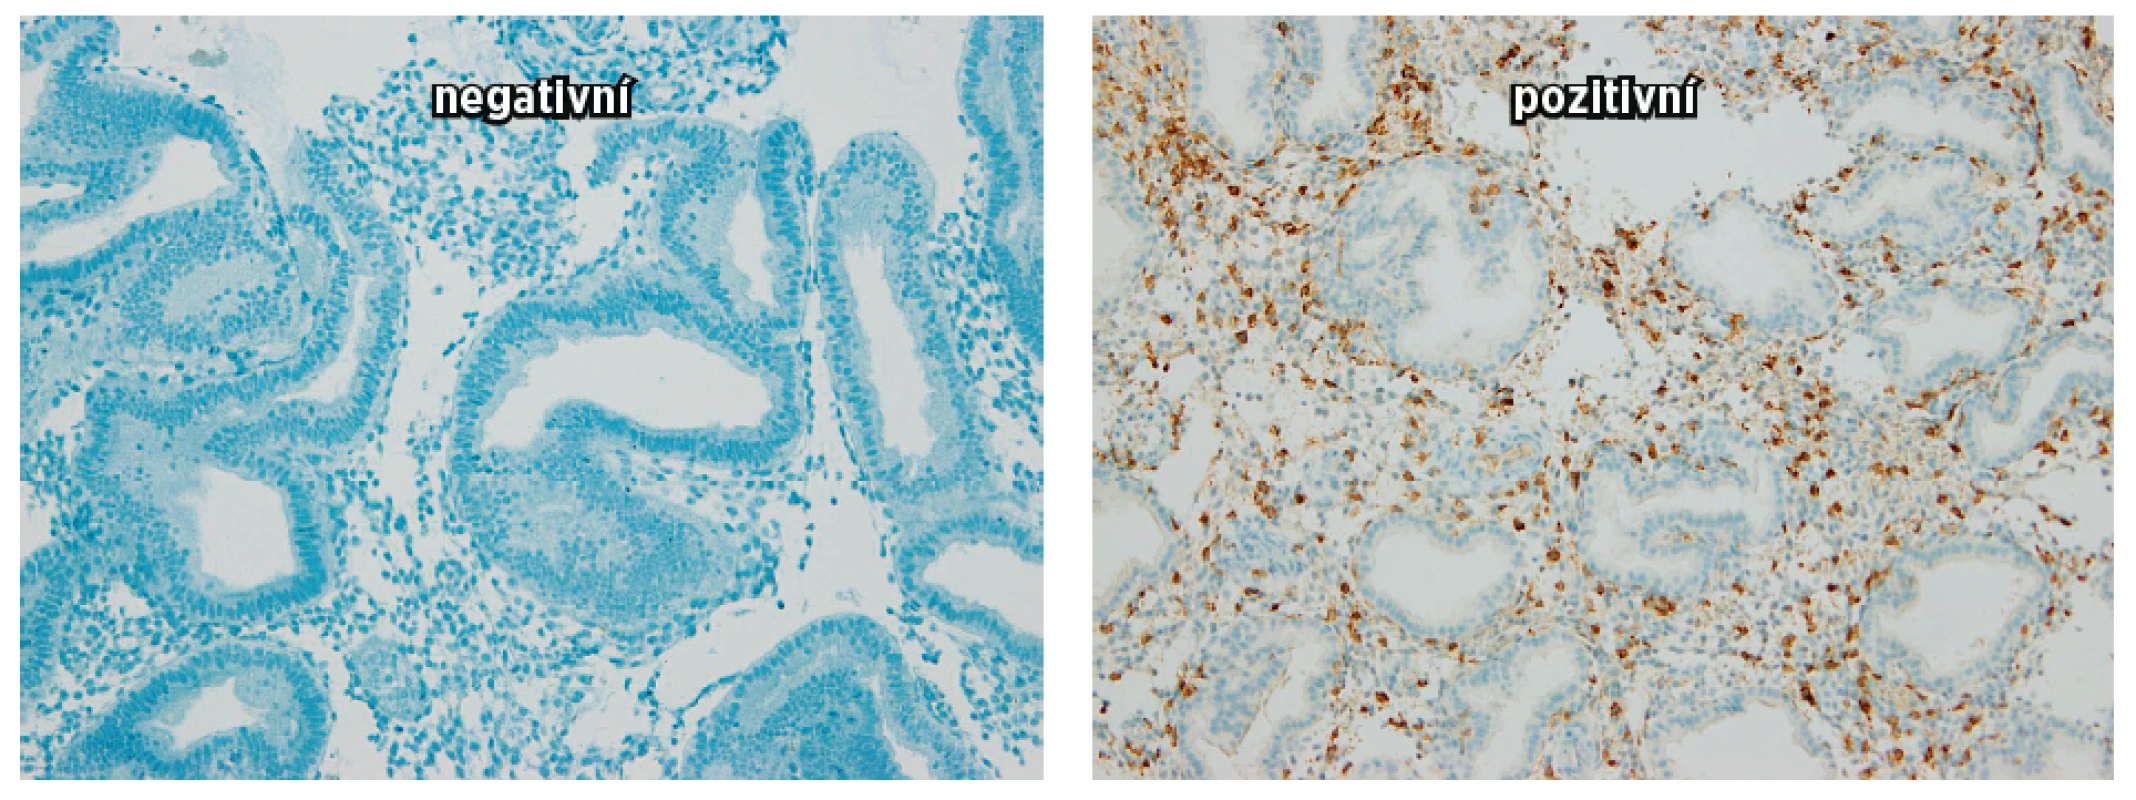 Obrázek vyjadřuje denzitu NK buněk CD56+ v endometriu (negativní a pozitivní)